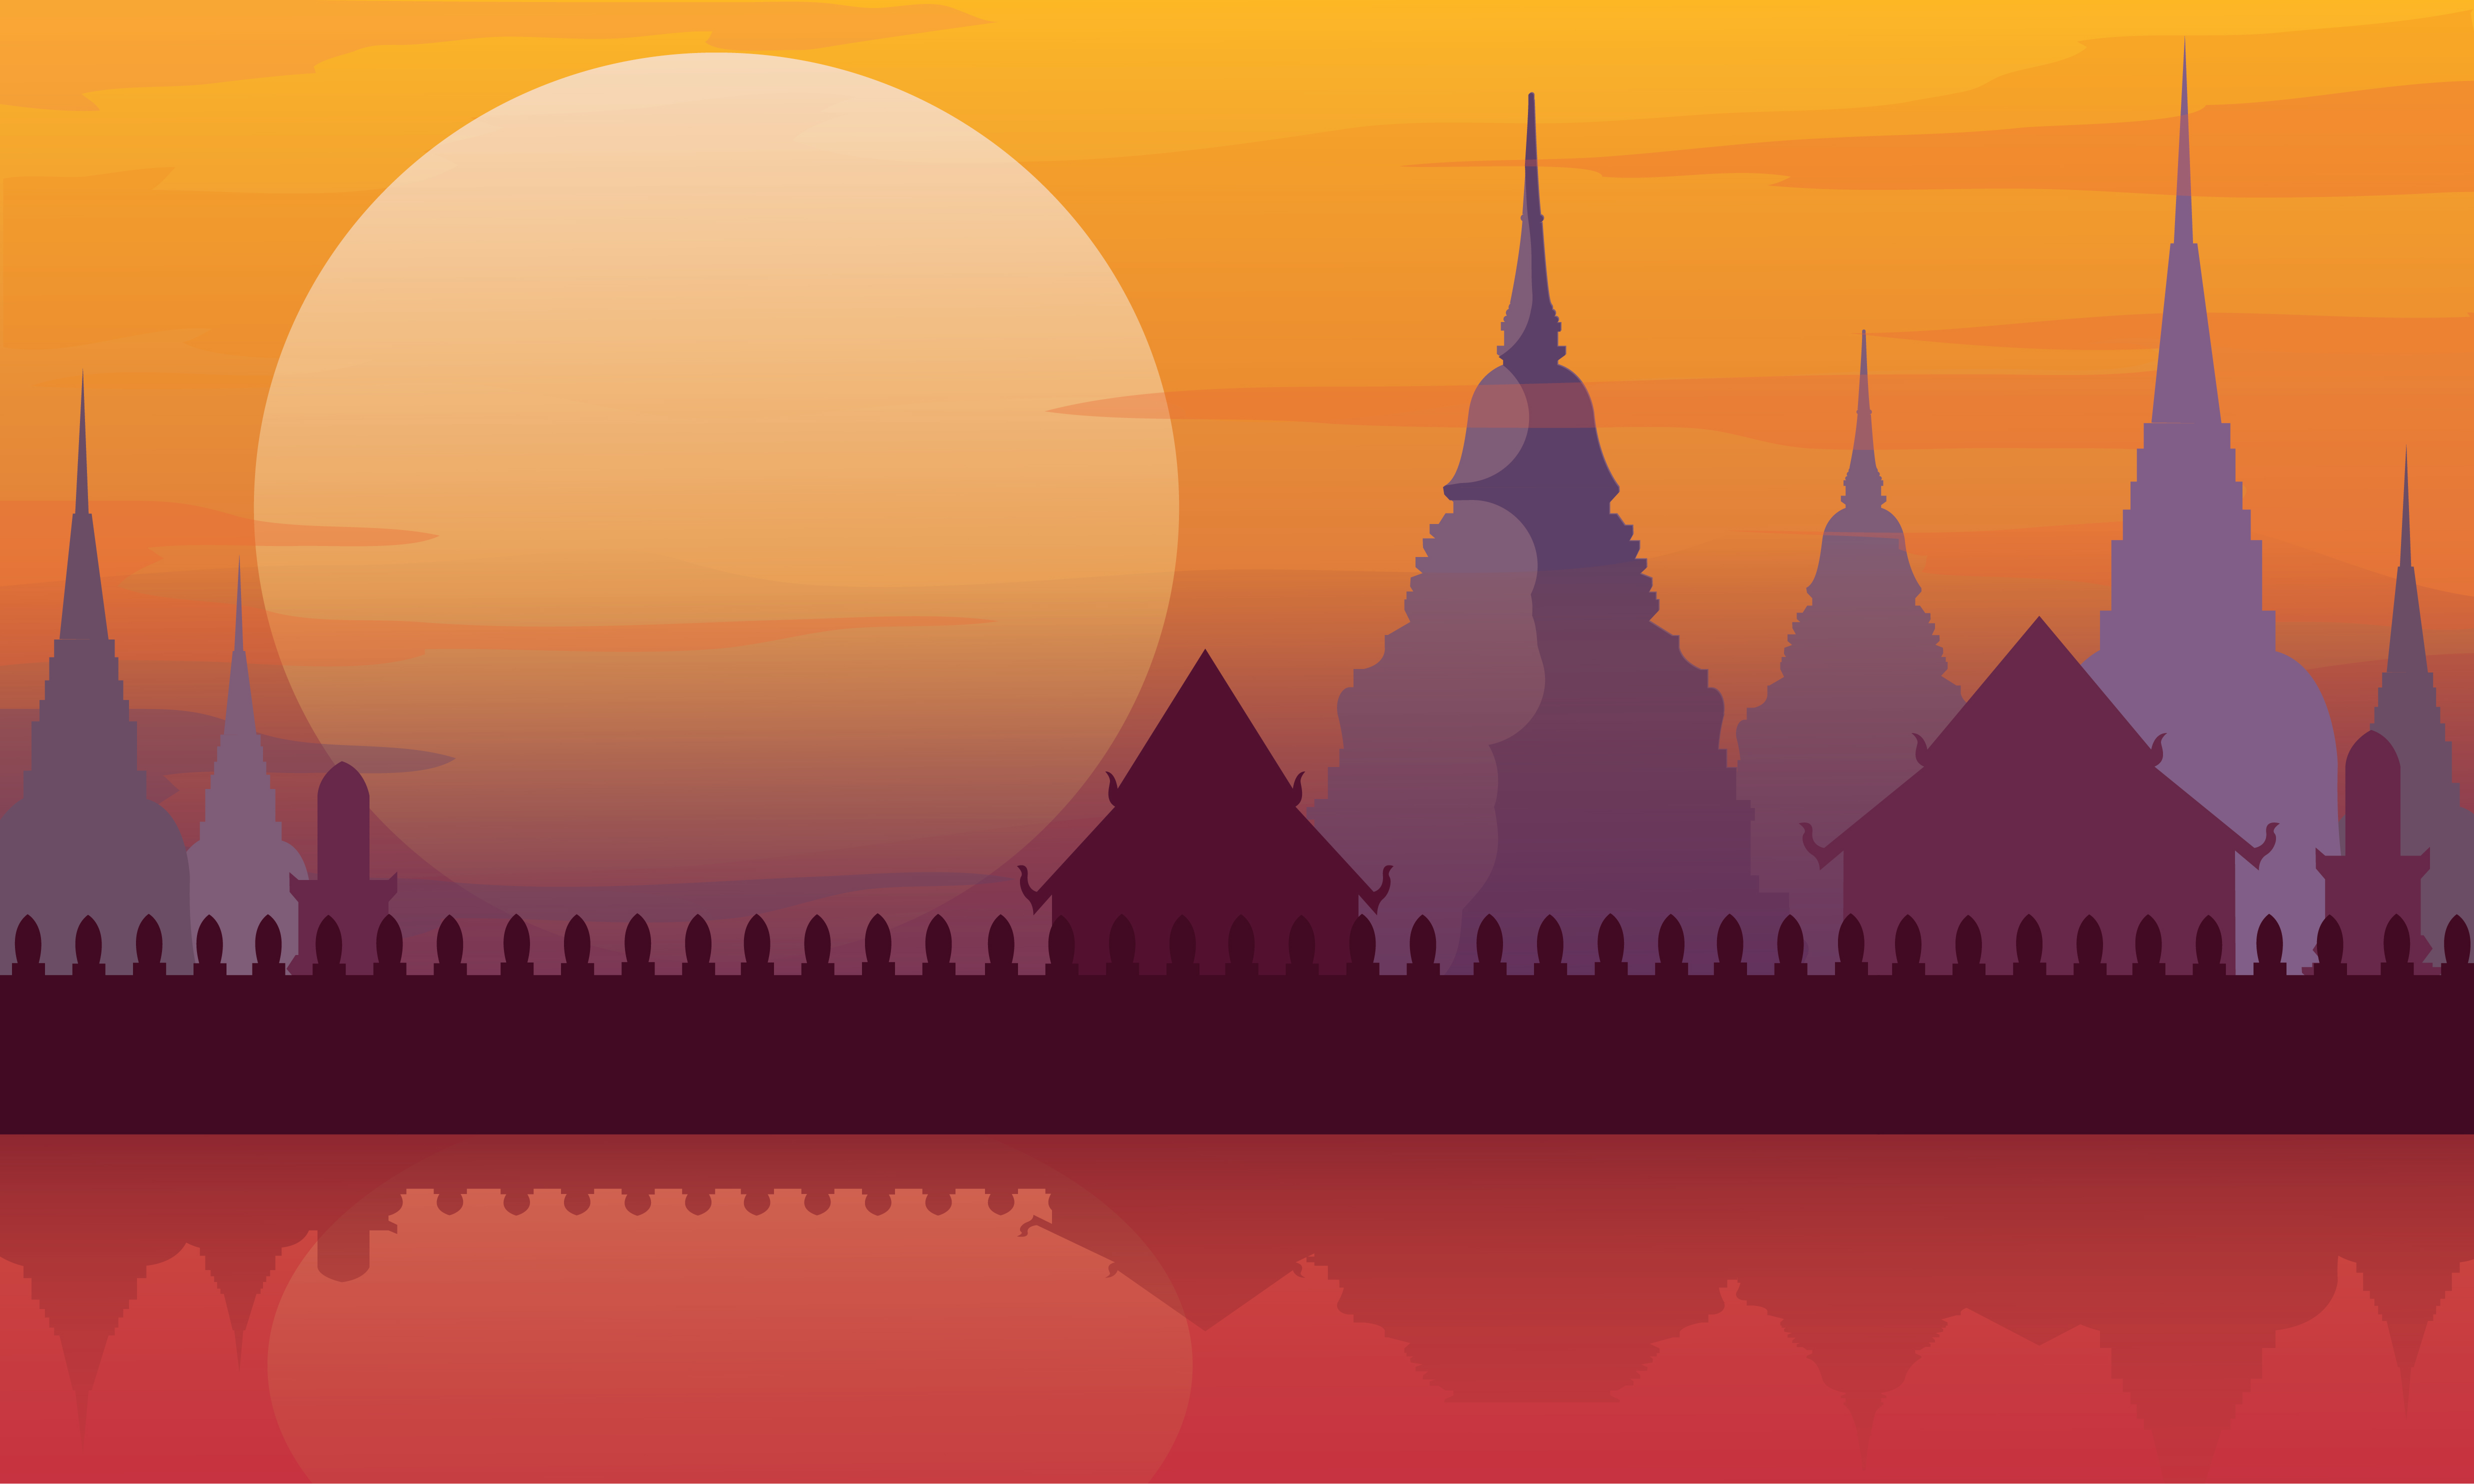  Thailand  temple landscape architecture poster vector 